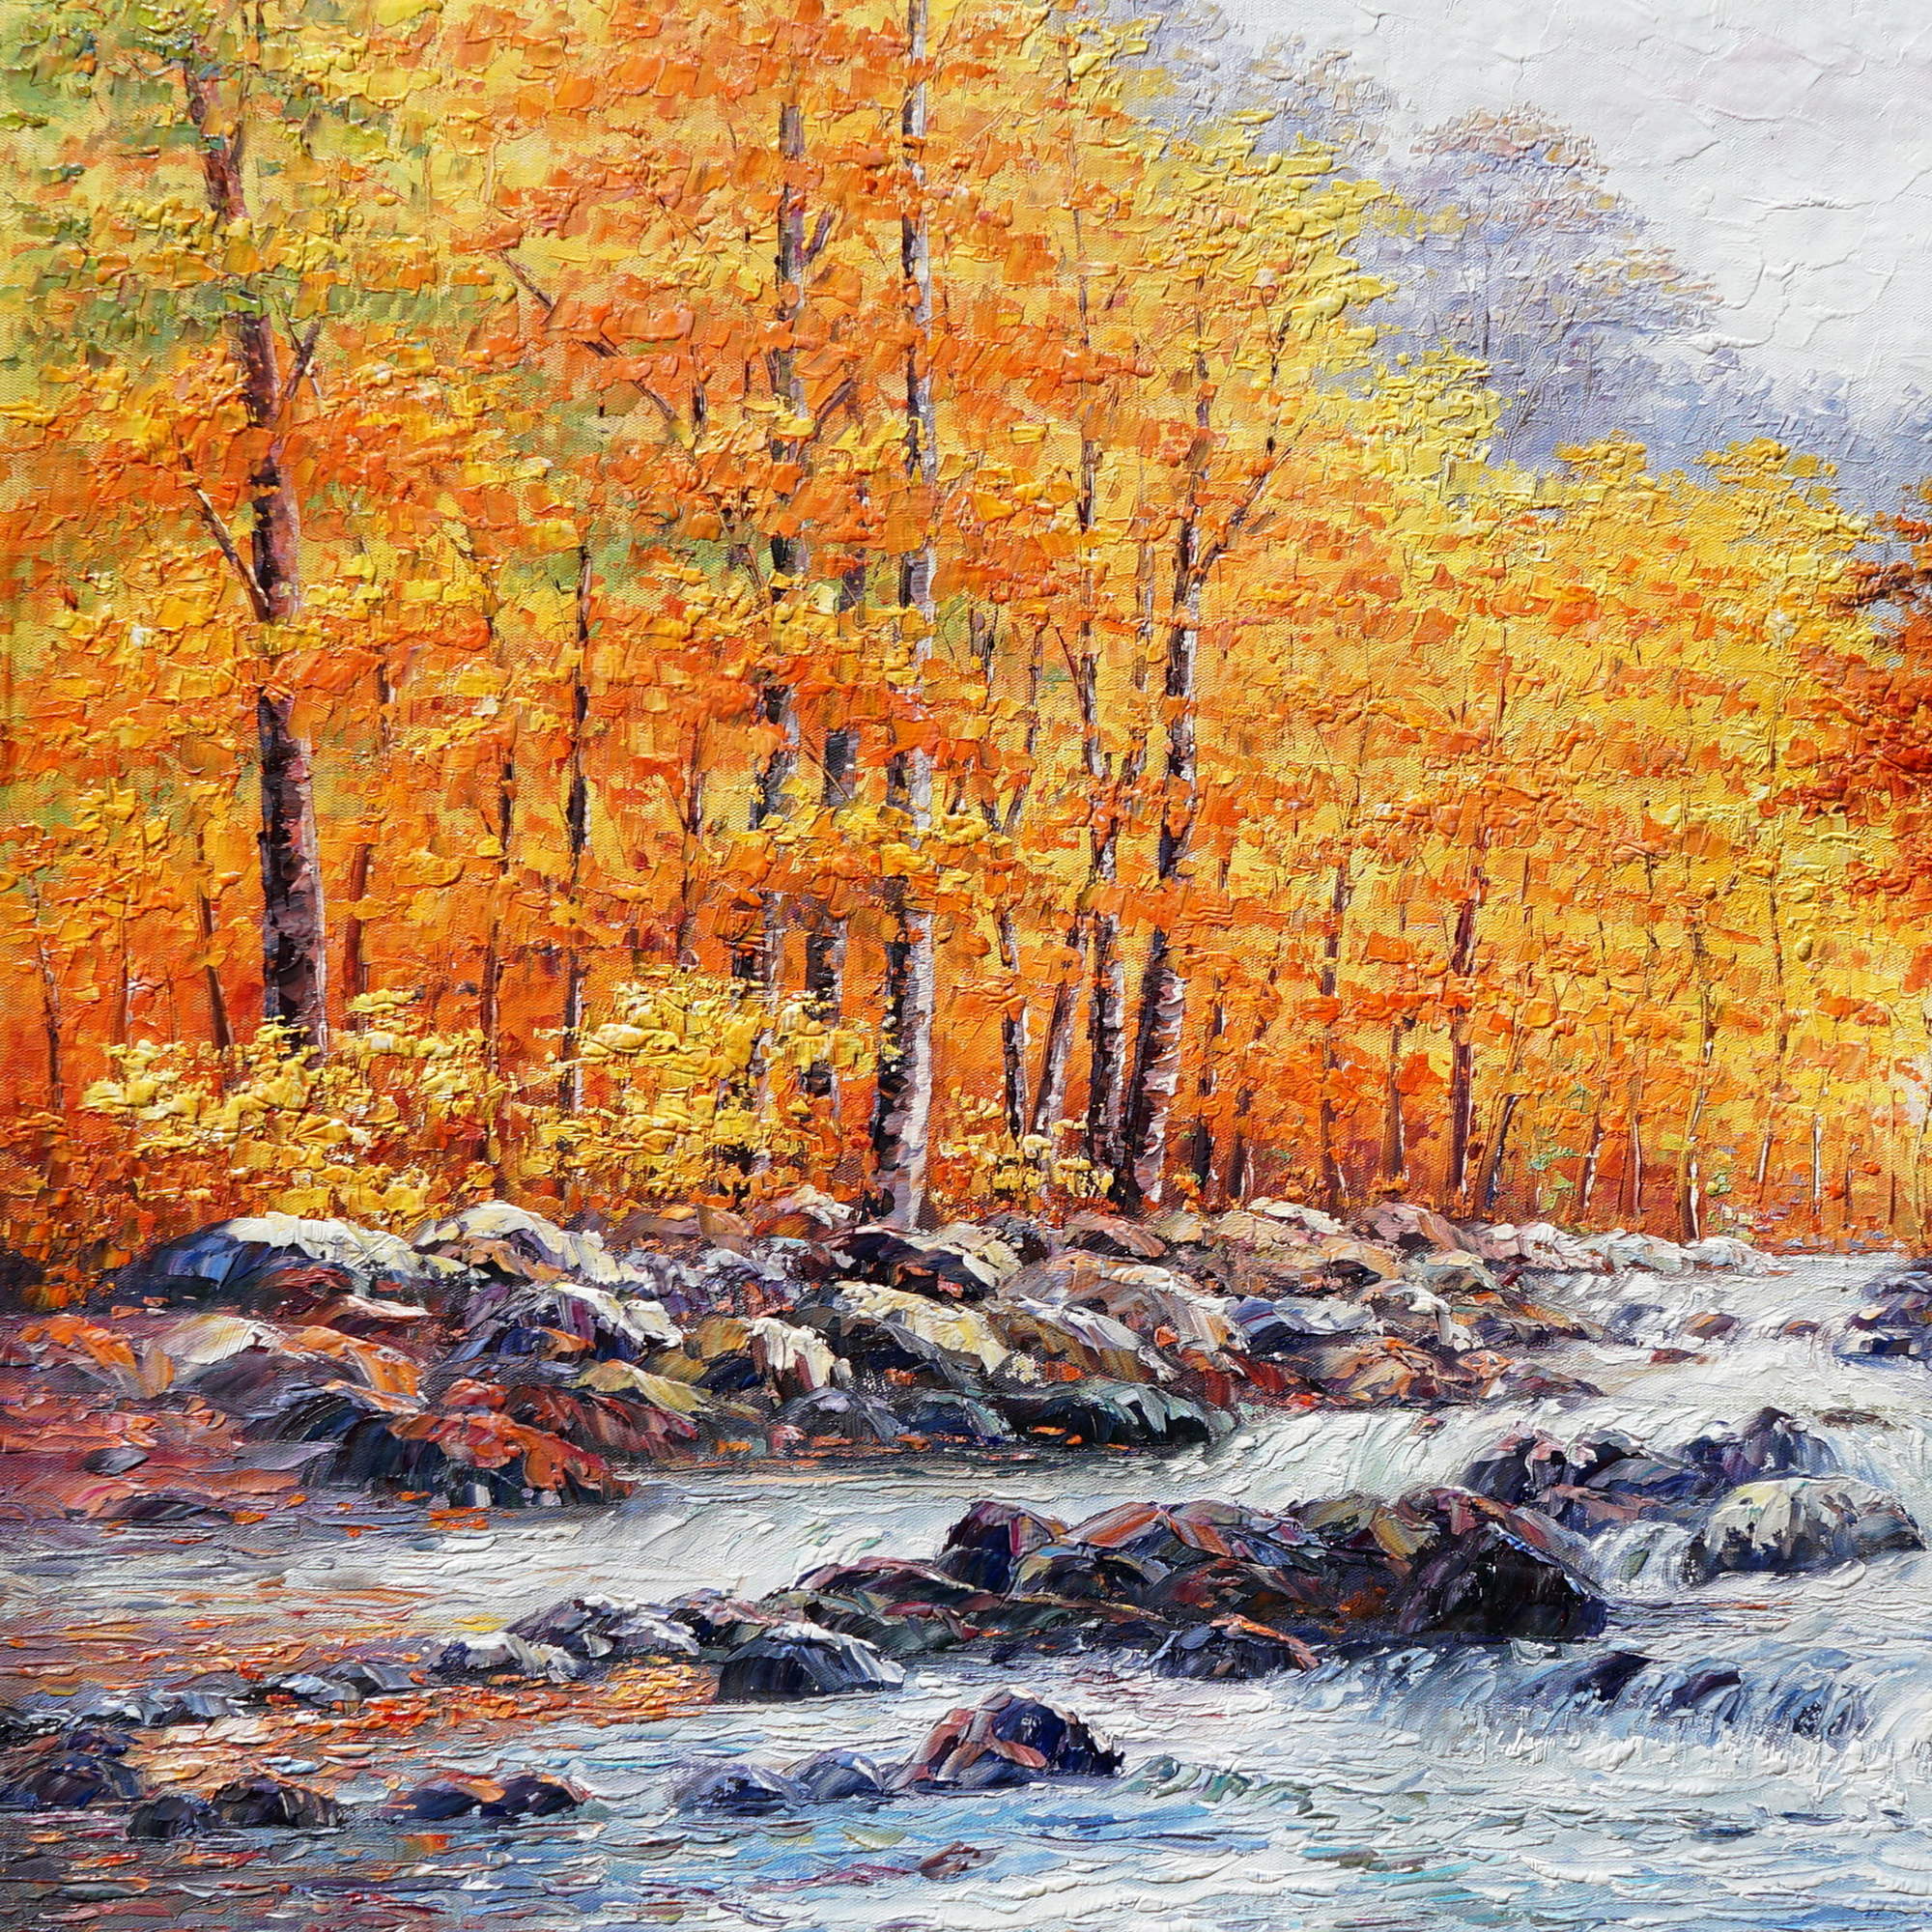 Hand painted Autumnal River Landscape 75x100cm